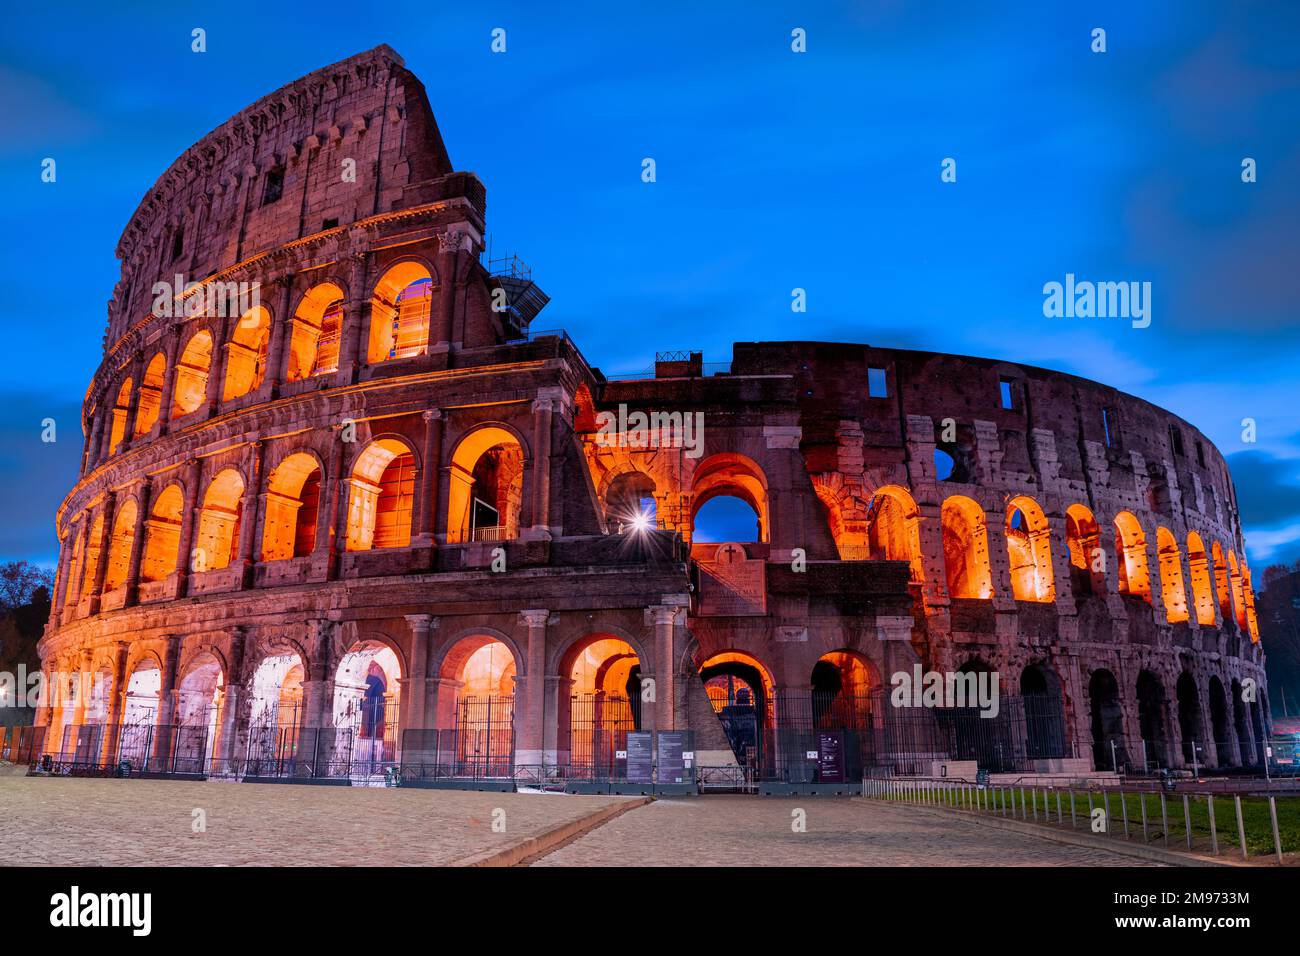 Authentisches Bild des großen Kolosseums von Rom von außen vor Sonnenaufgang. Sonnenaufgang am berühmten römischen Kolosseum. Stockfoto